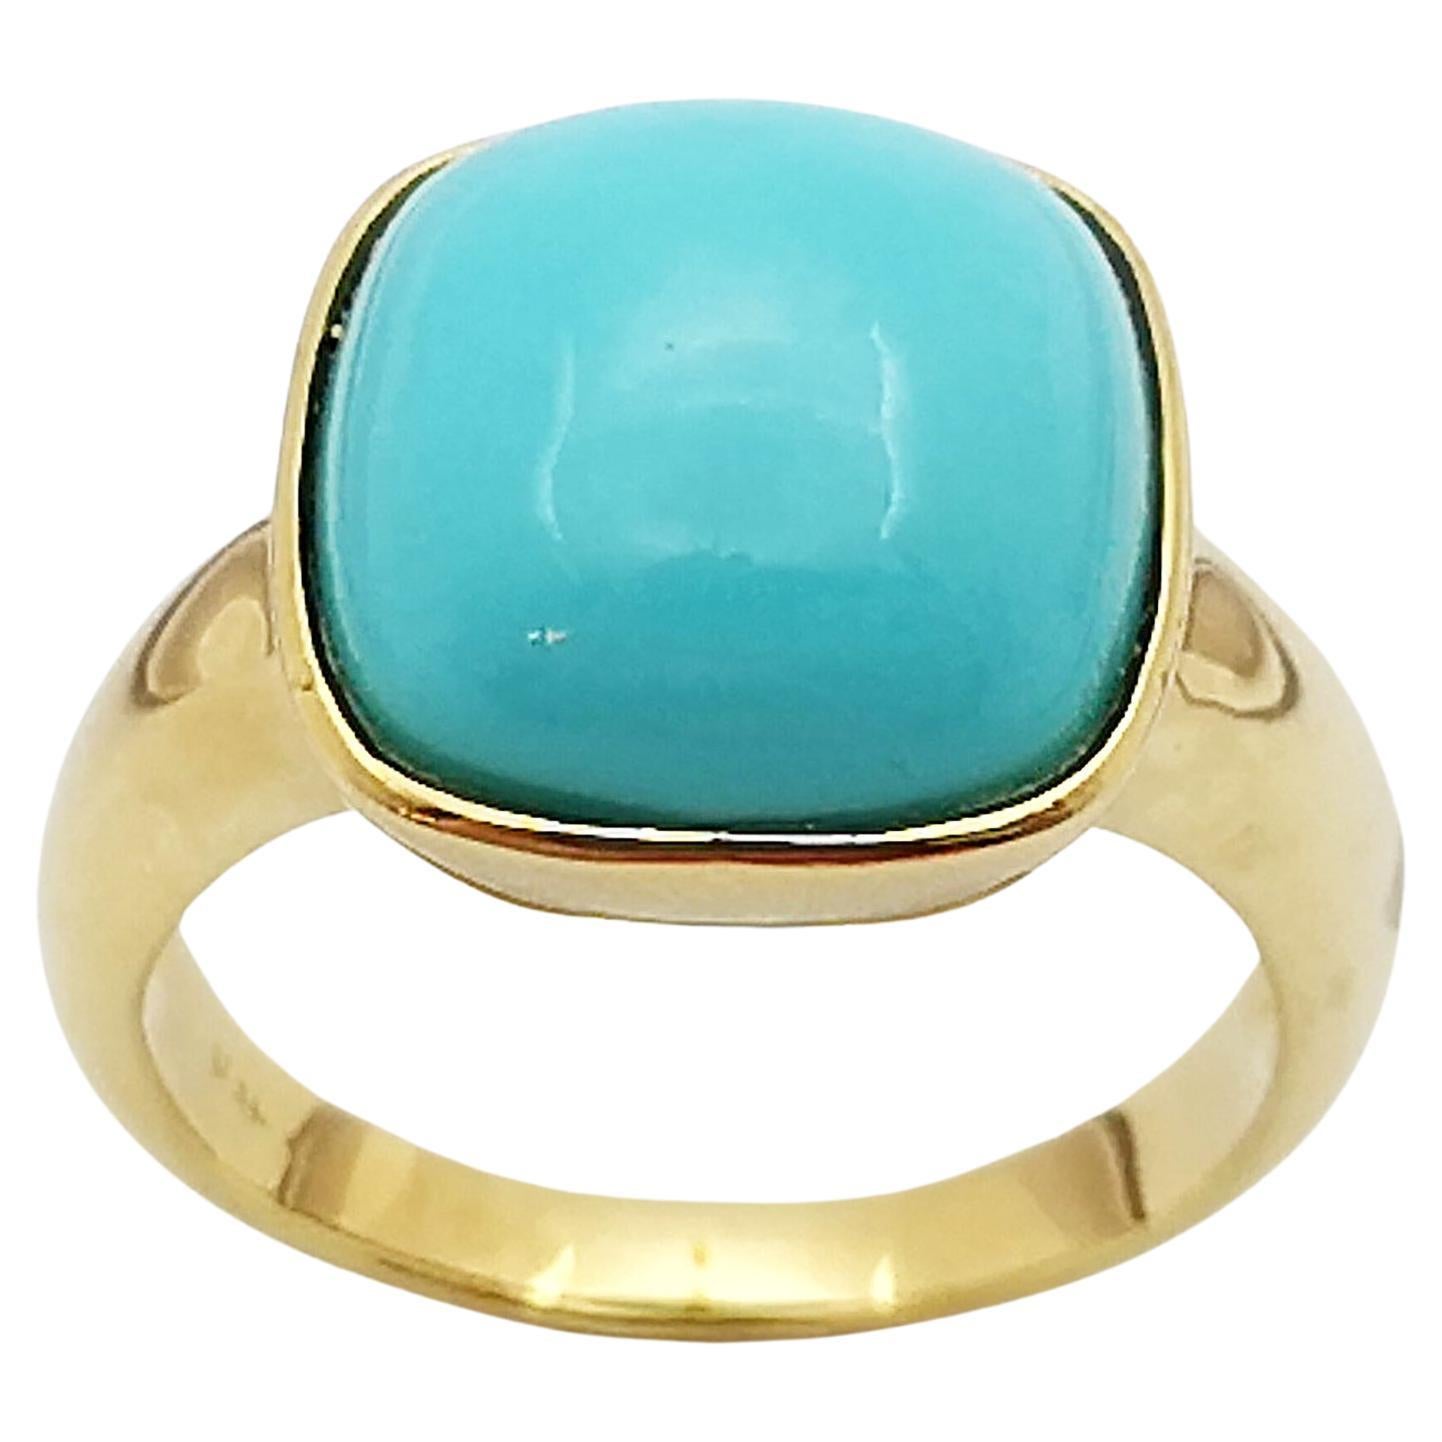 Turquoise Ring Set in 18 Karat Gold Settings